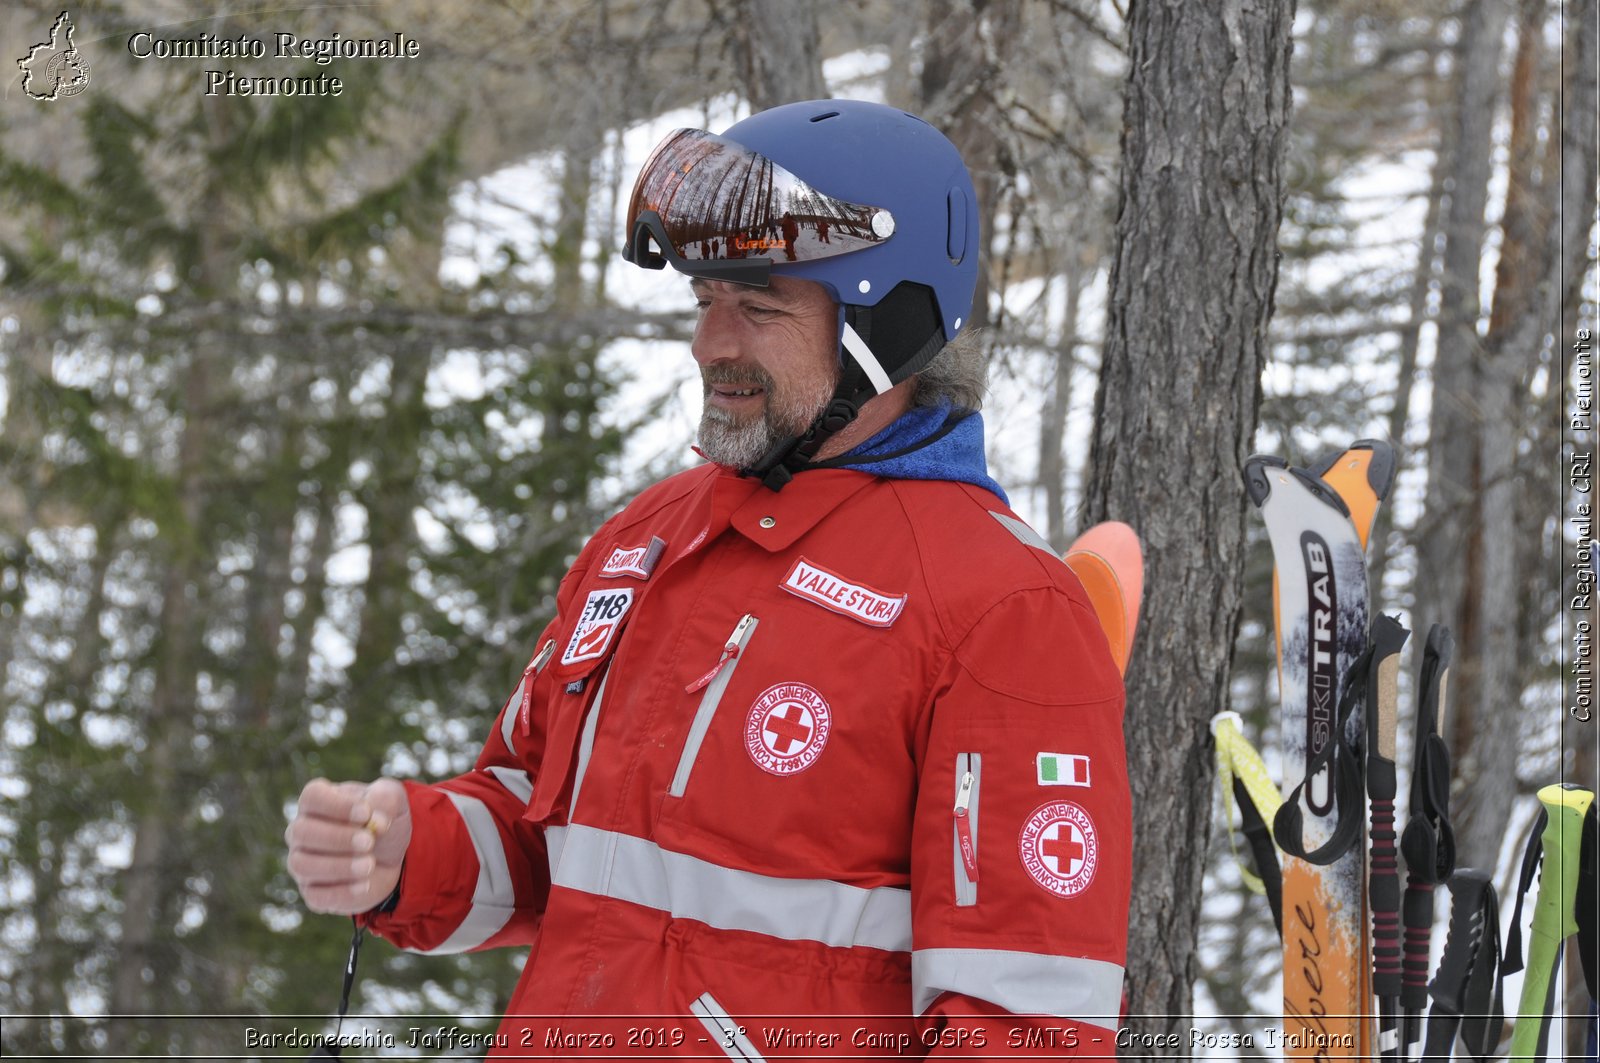 Bardonecchia Jafferau 2 Marzo 2019 - 3 Winter Camp OSPS  SMTS - Croce Rossa Italiana - Comitato Regionale del Piemonte